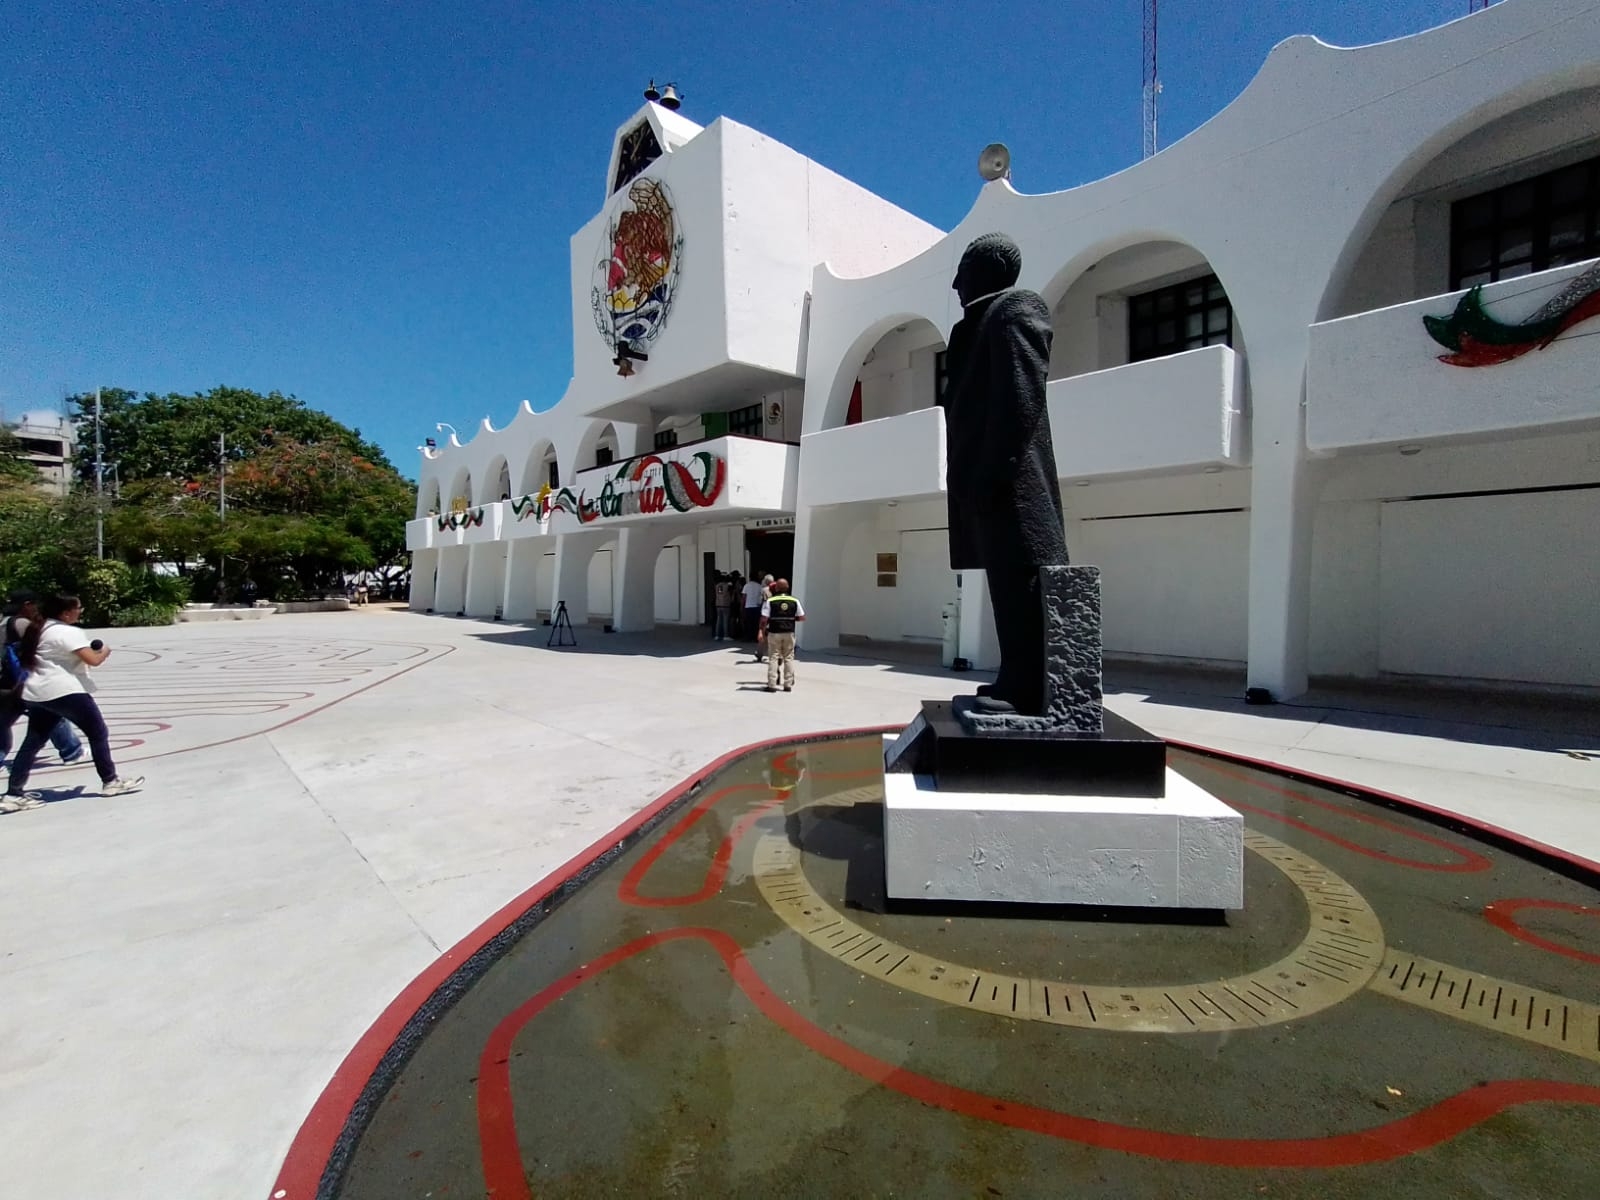 Por Semana Santa, suspenden labores en dependencias públicas de Cancún